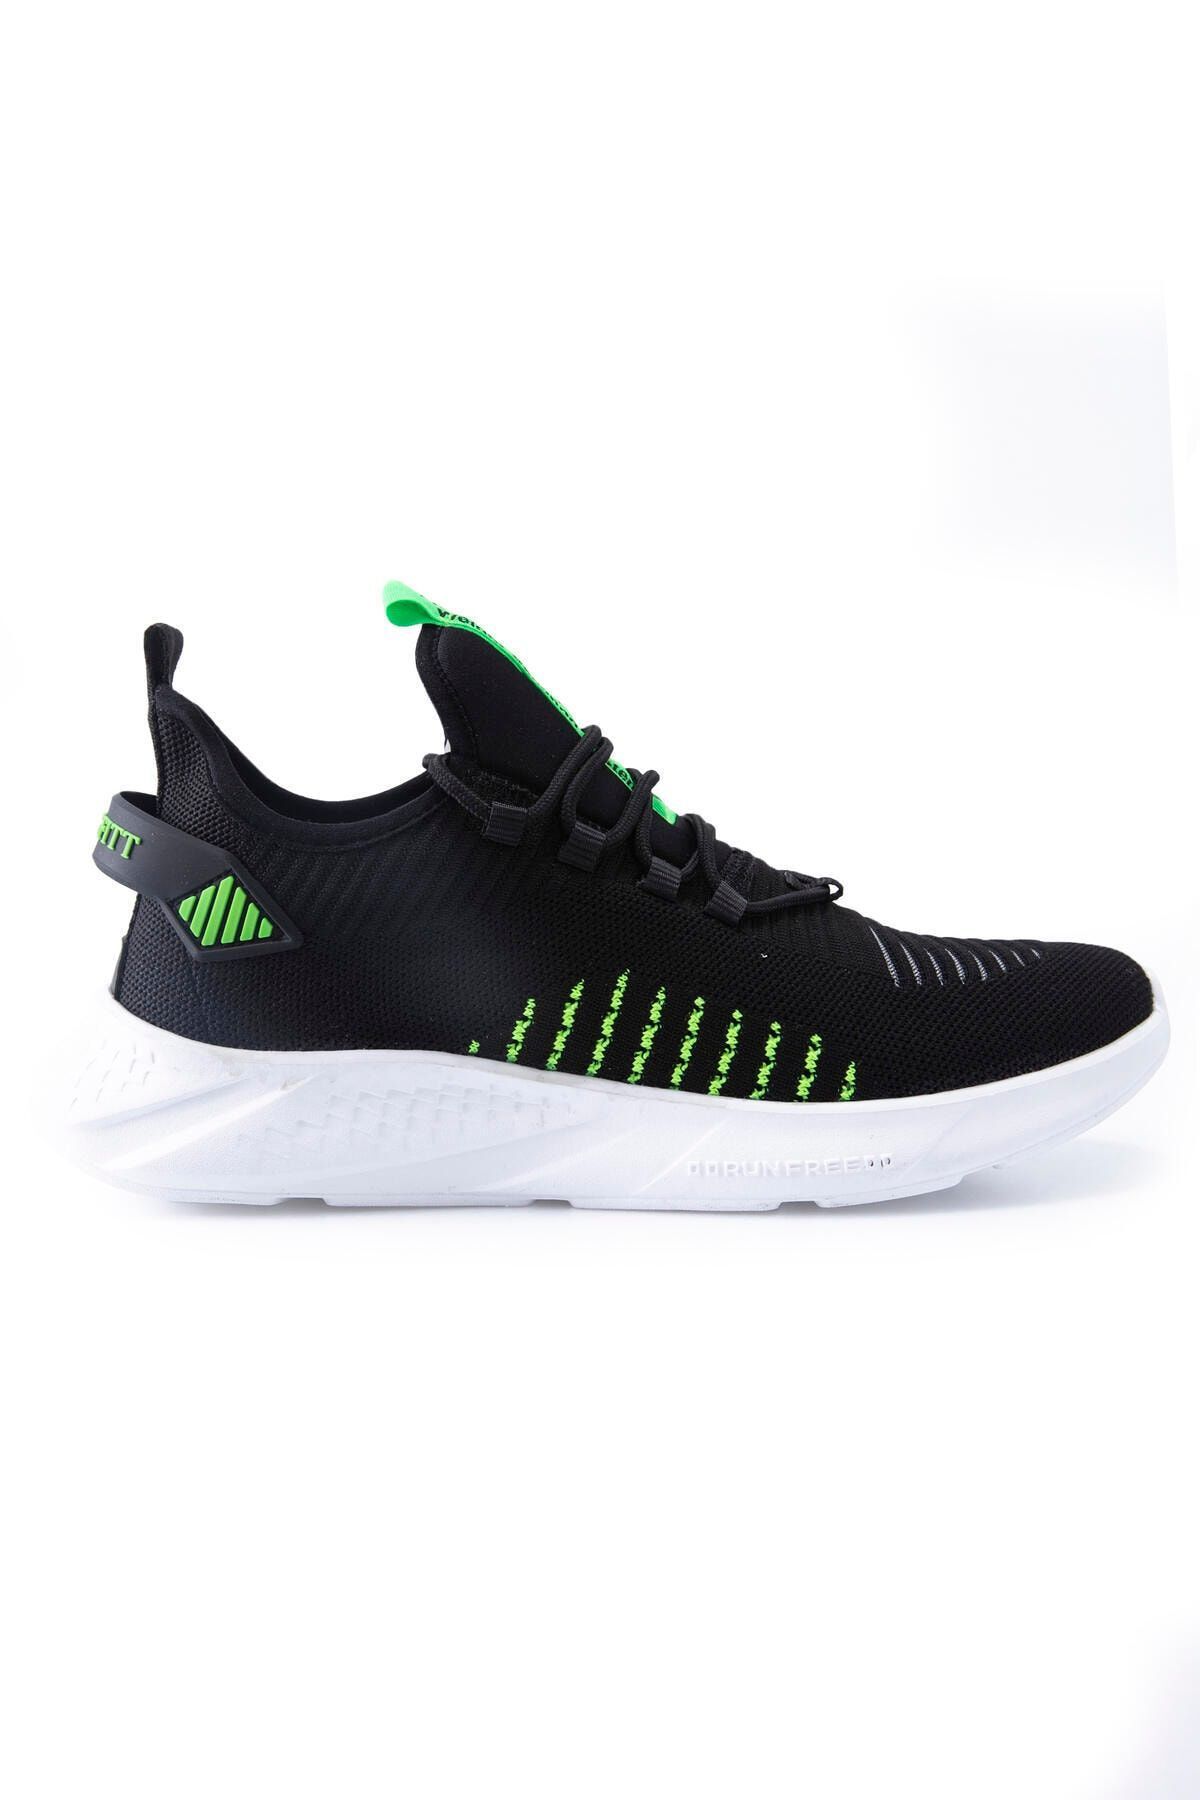 TOMMY LIFE Siyah - Yeşil Lastik Bağcıklı Çizgi Detaylı Yüksek Taban Erkek Spor Ayakkabı - 89067